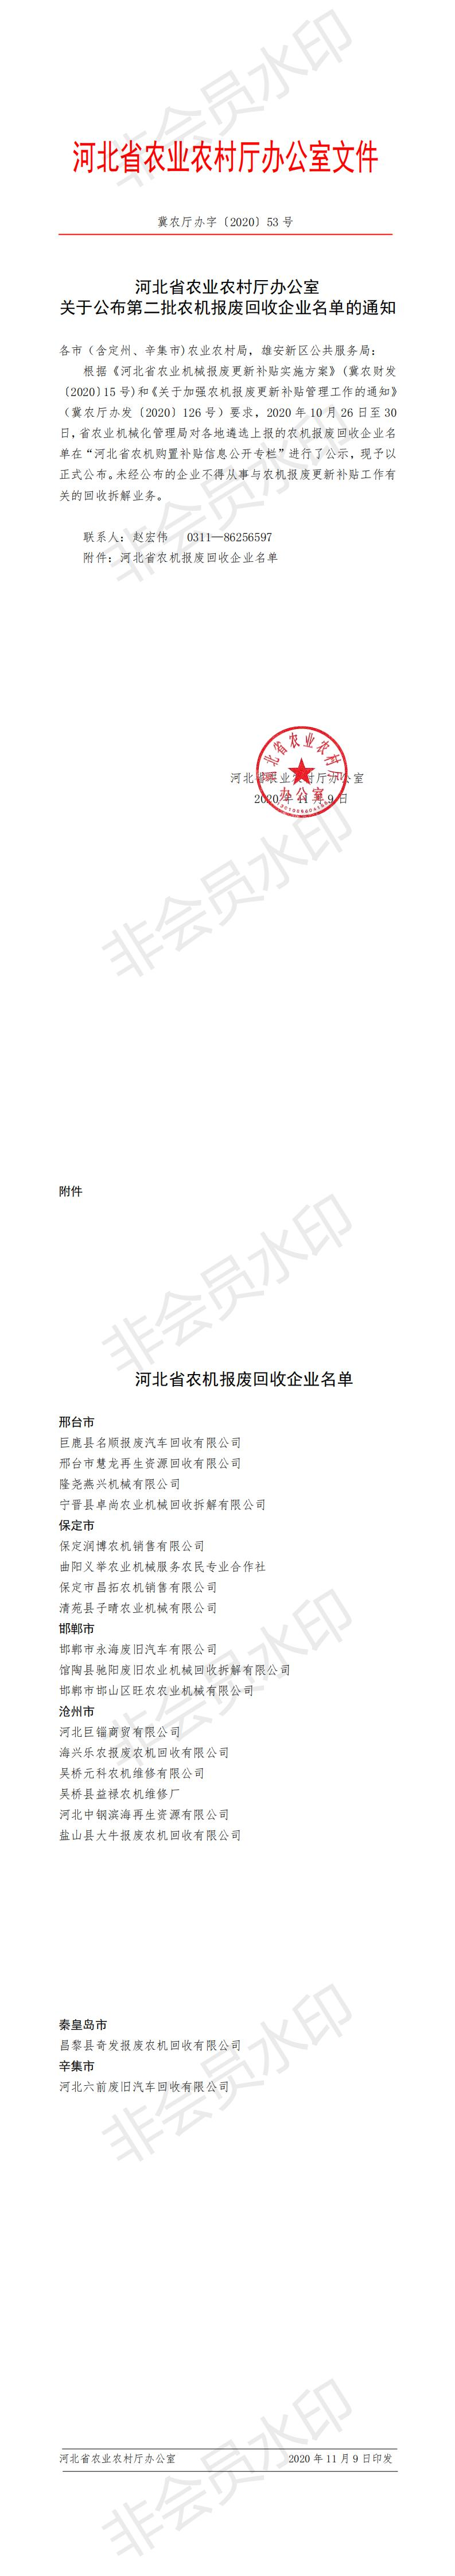 河北省关于公布第二批农机报废回收企业名单的通知